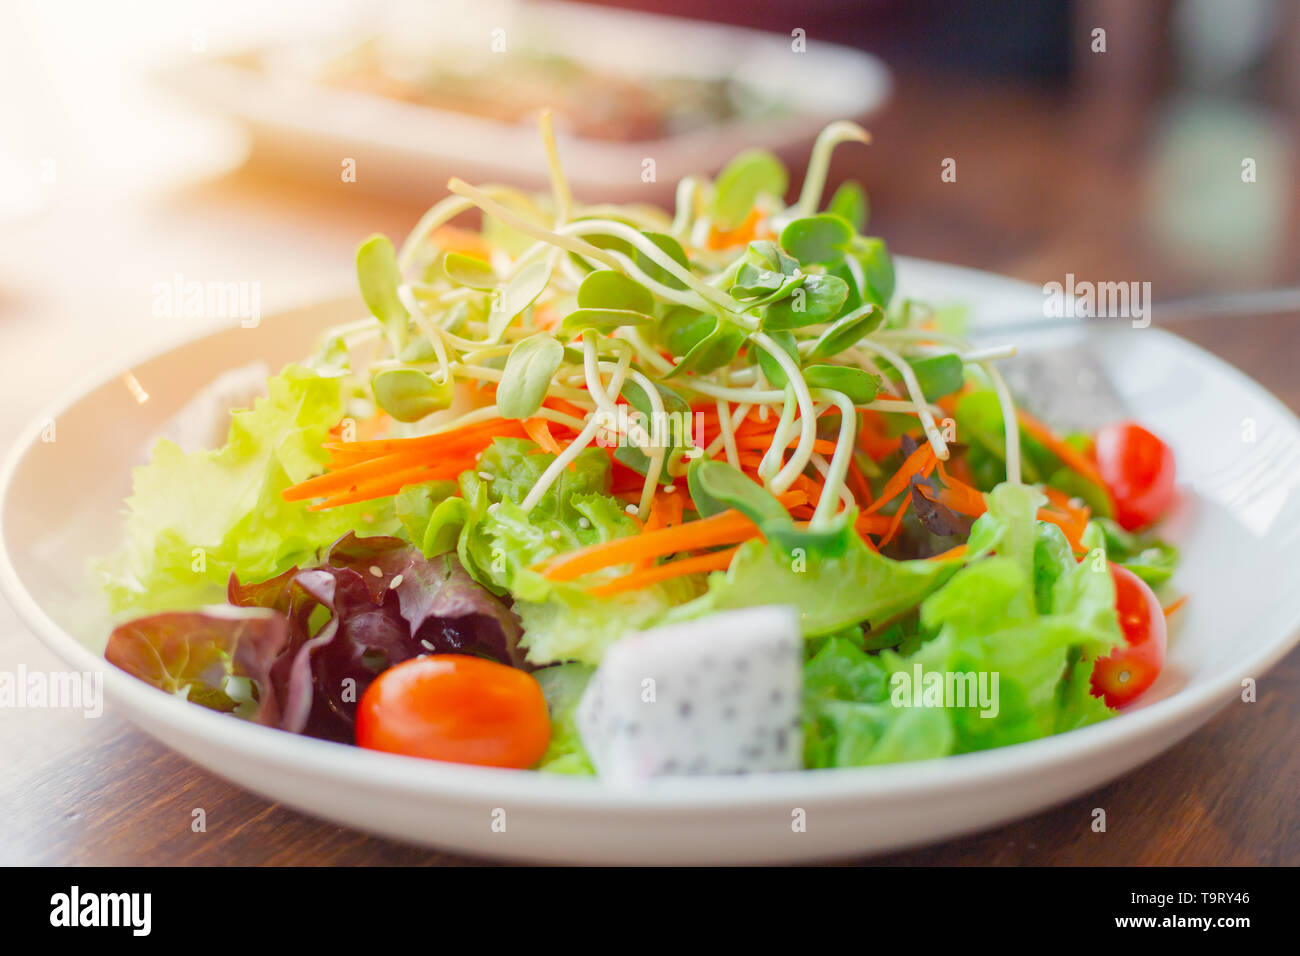 Vegane Mahlzeit Gemüse Obst gemischter Salat Sauber Gesunde Ernährung Vegetarische low fat High fiber Food Stockfoto